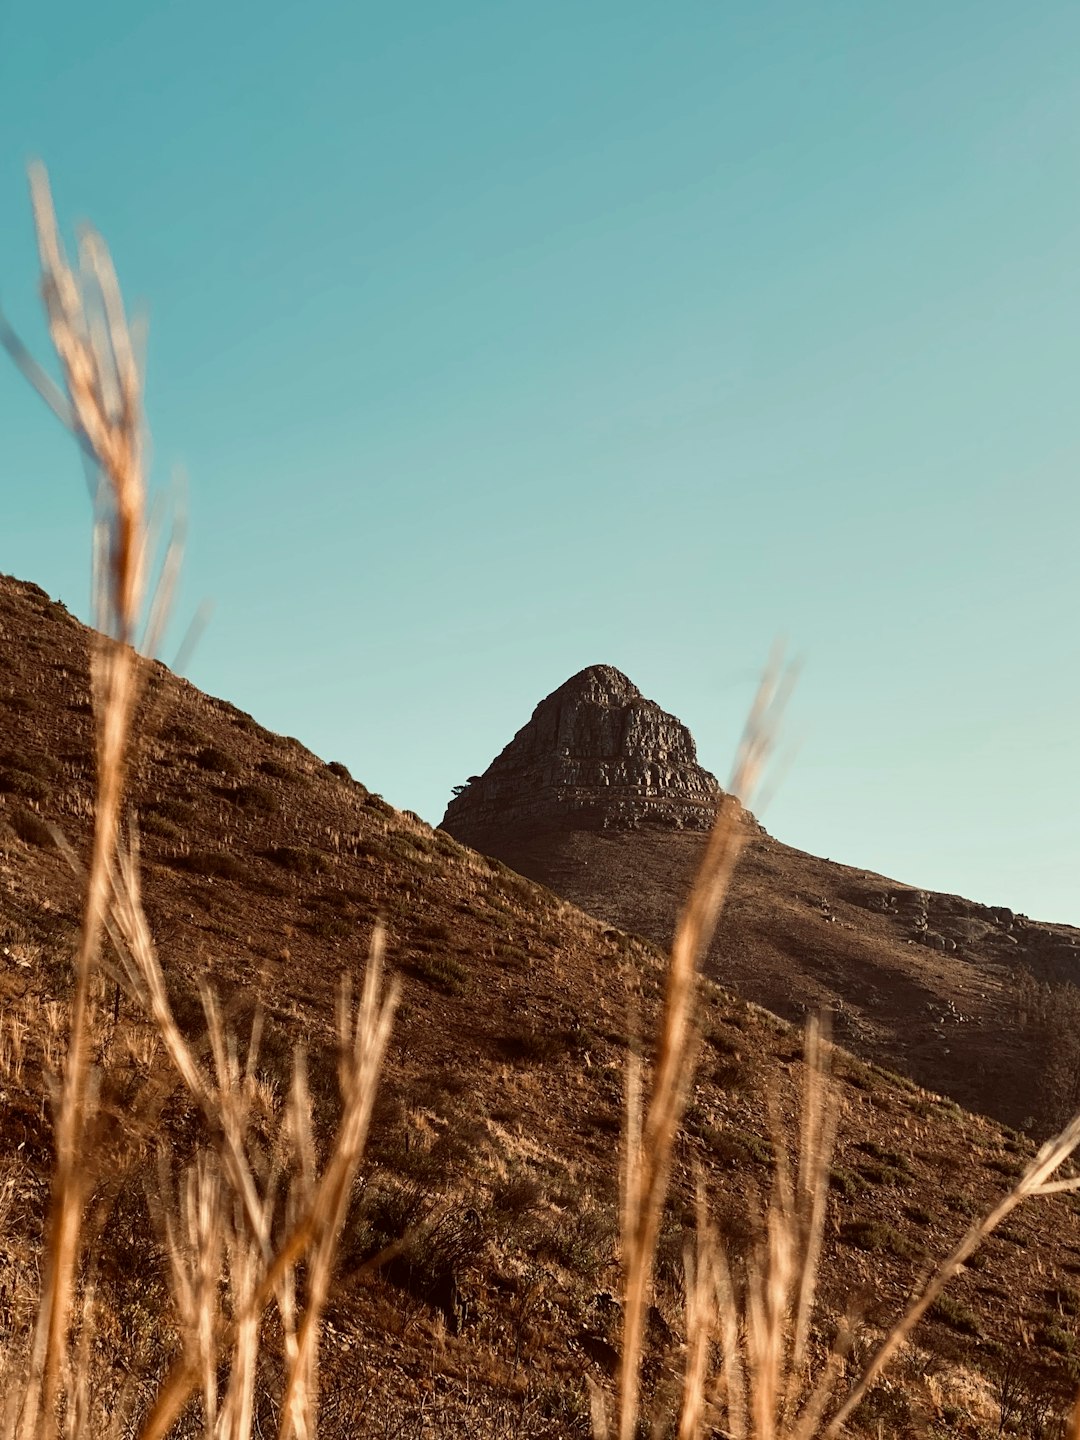 Hill photo spot Table Mountain National Park Stellenbosch